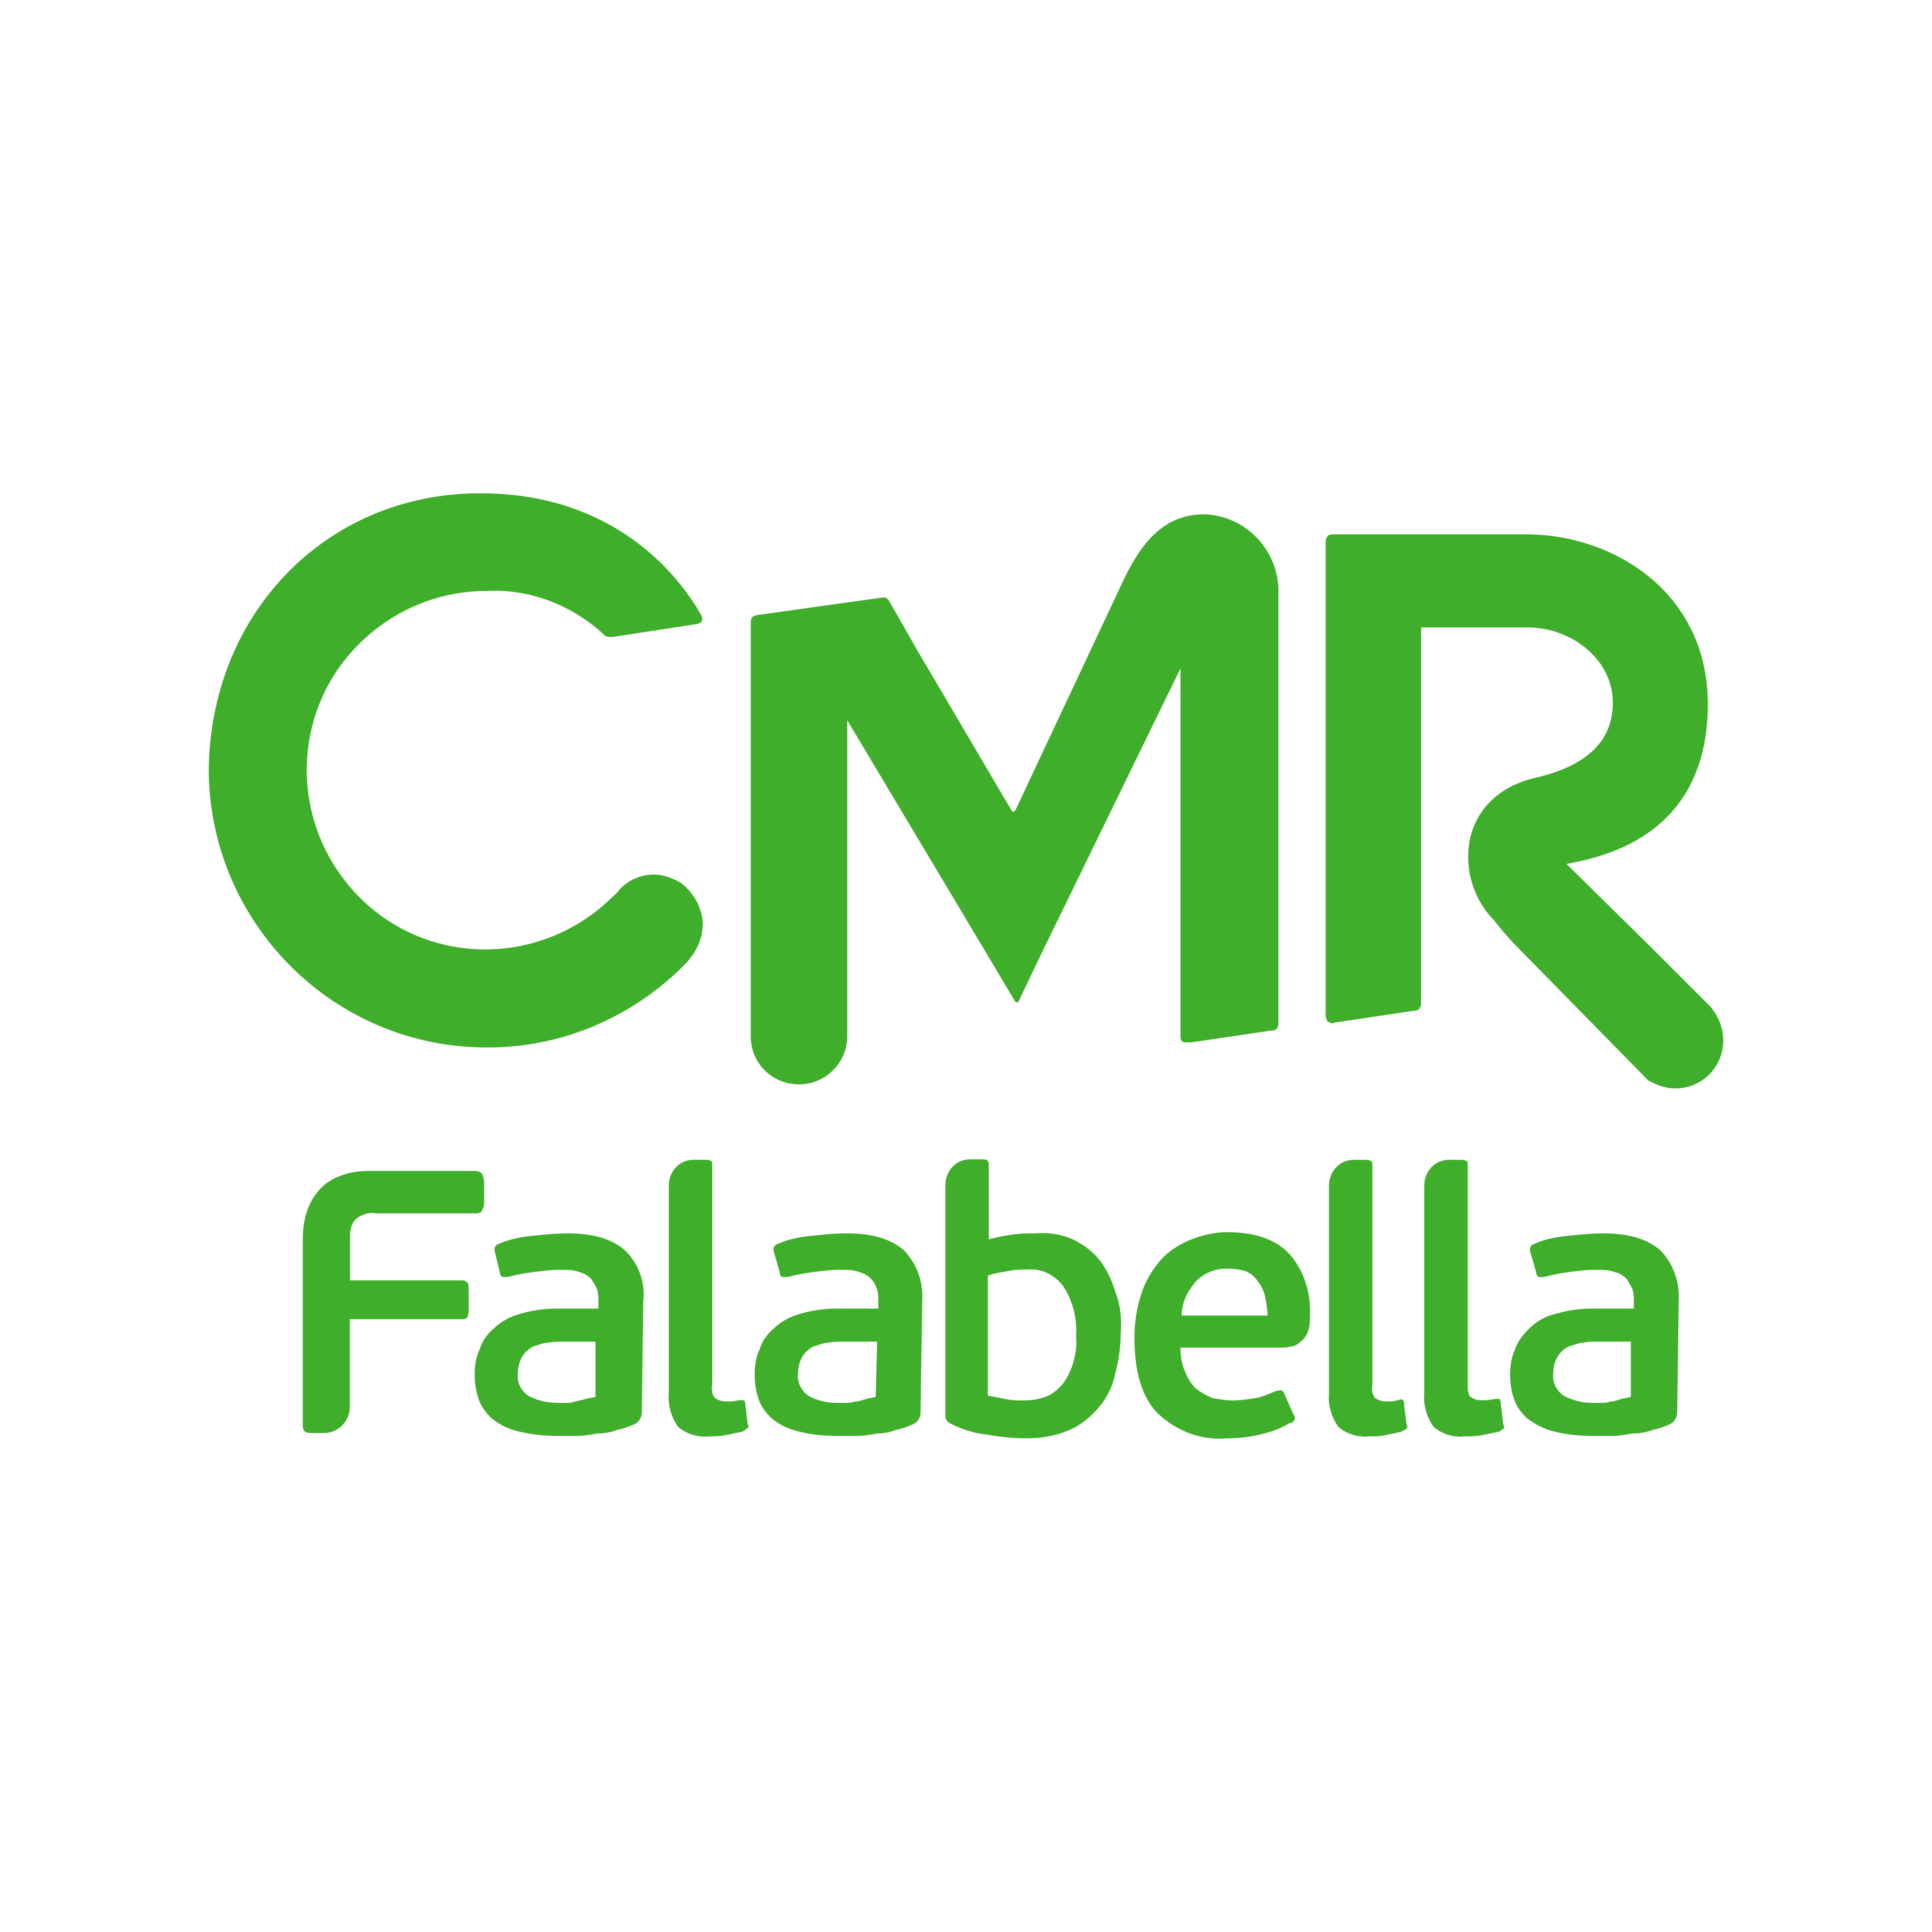 cmr falabella logo 0 - CMR Falabella Logo